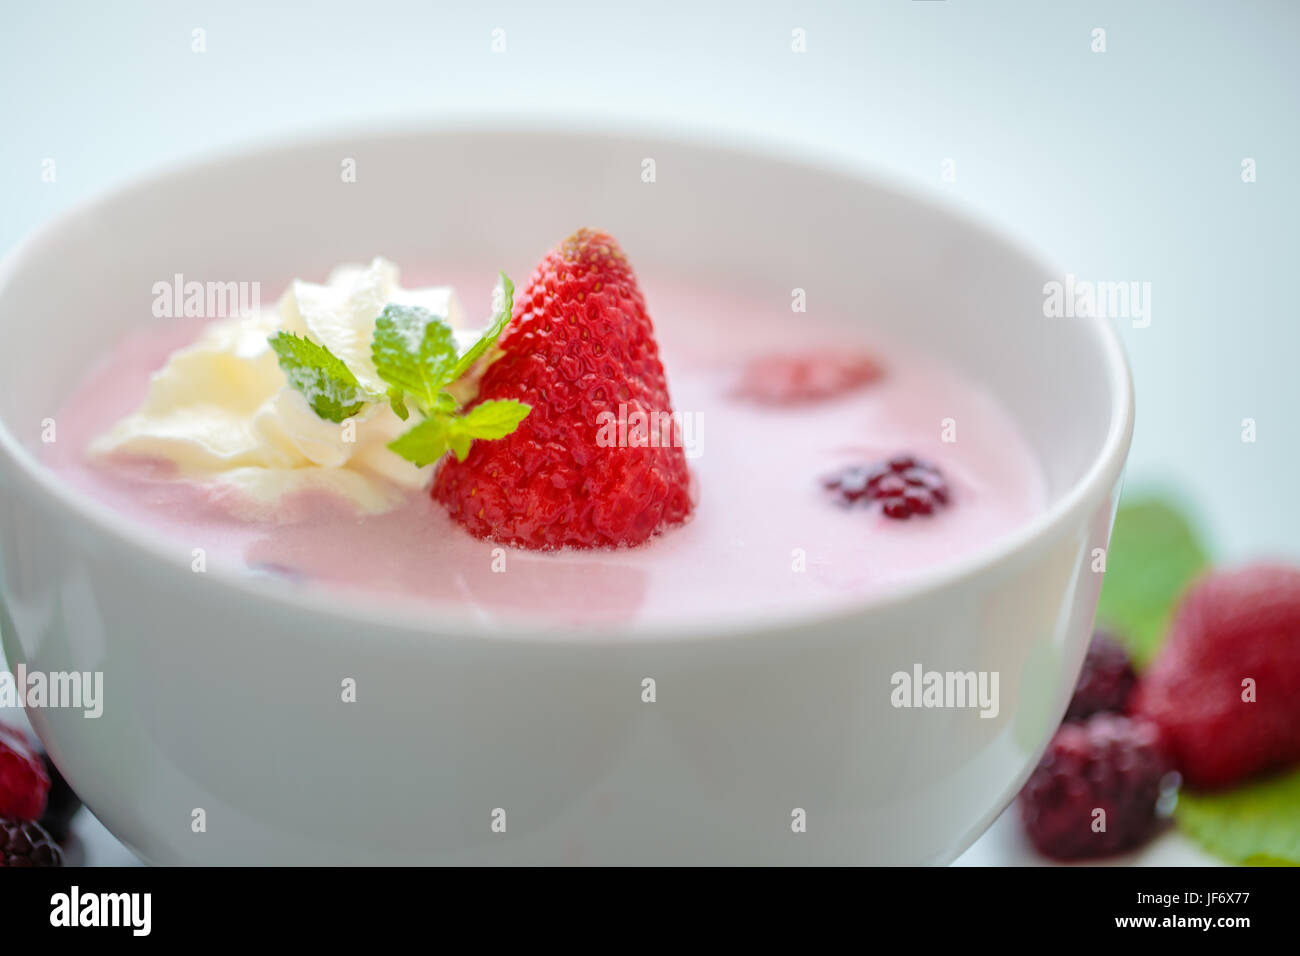 Soupe aux petits fruits libre avec fraise, feuille de menthe et crème Banque D'Images